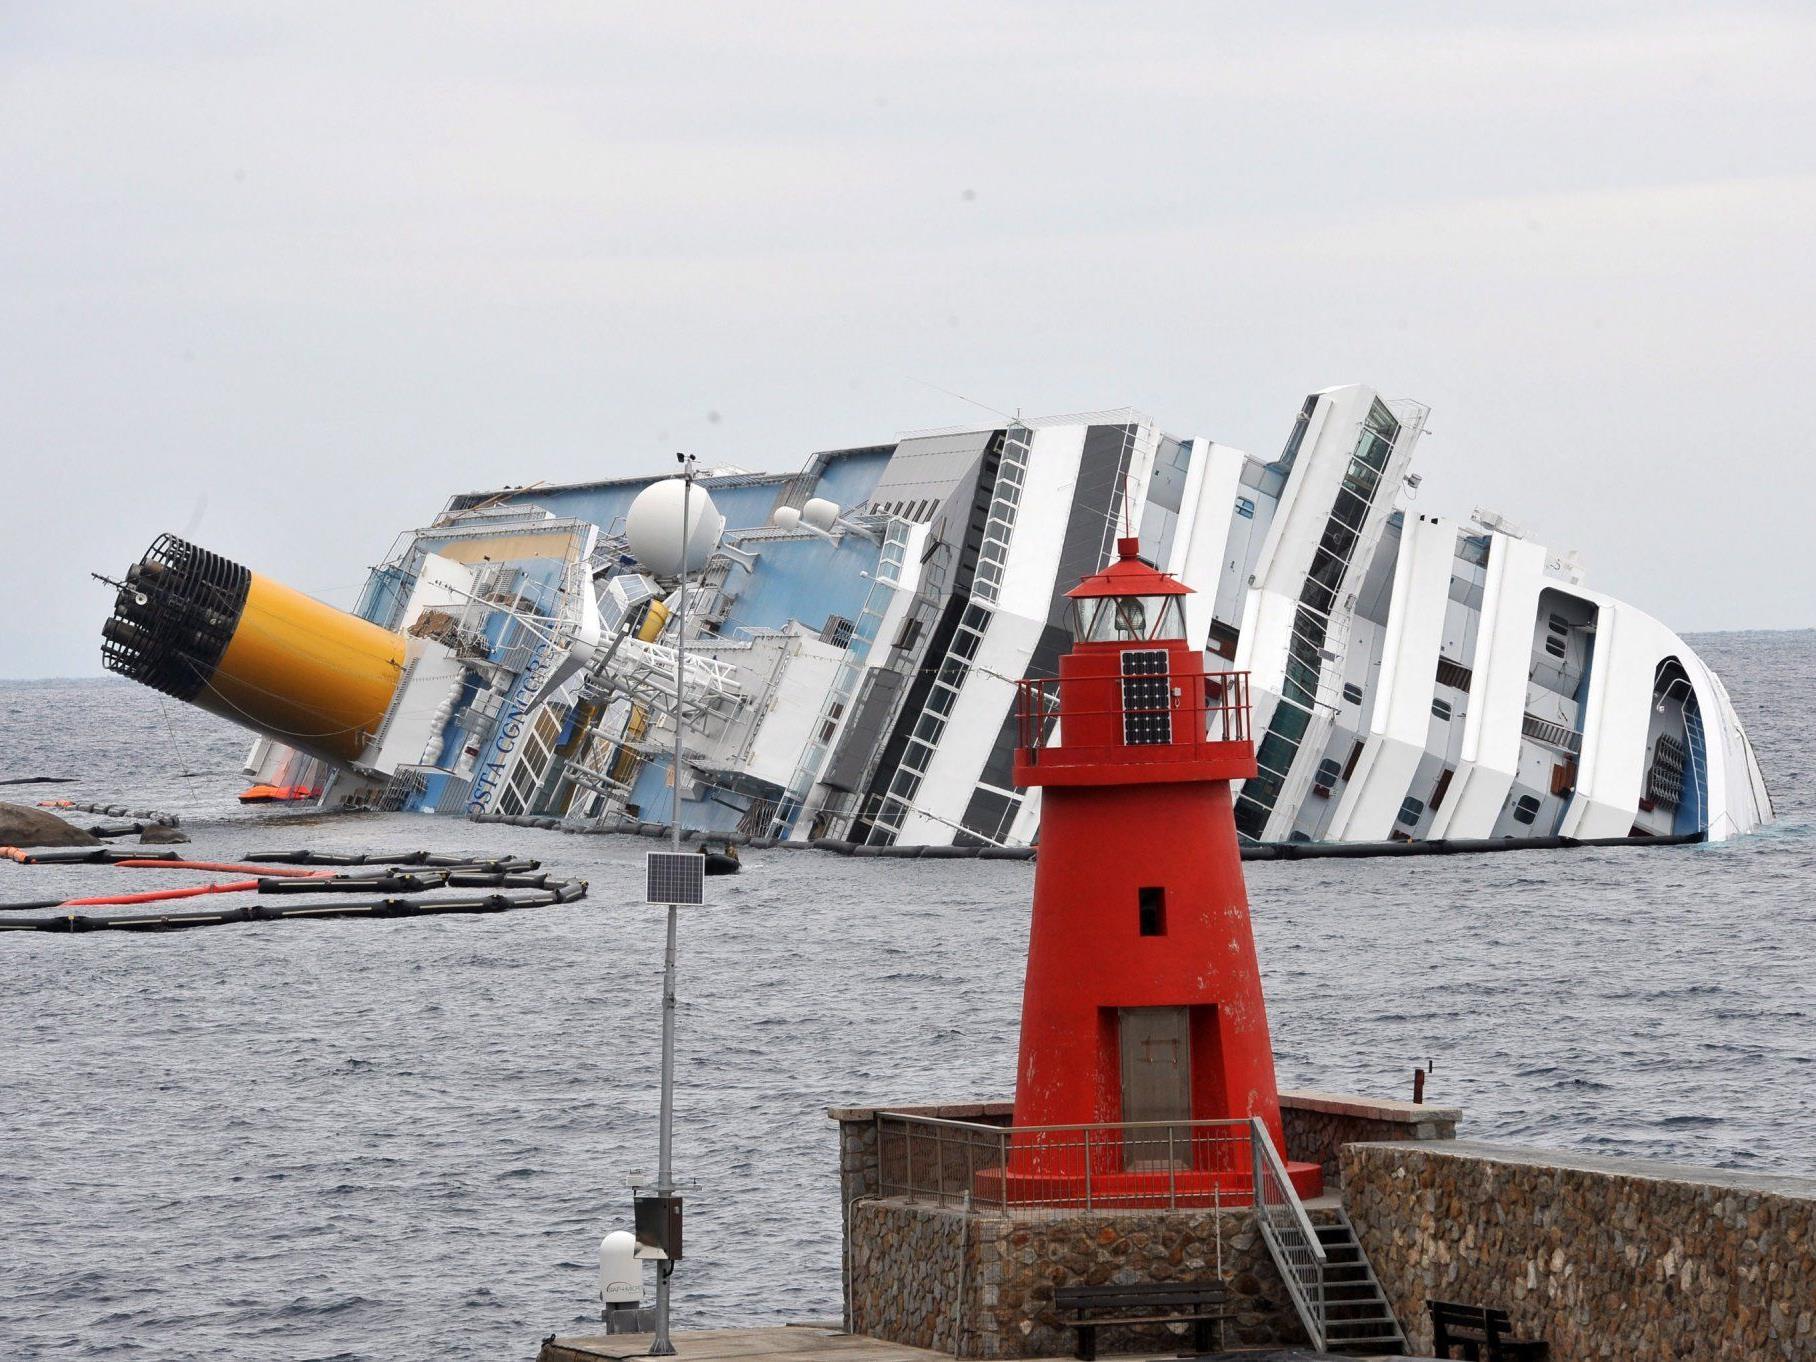 Bei der Havarie der Costa Concordia am 13. Jänner kamen vermutlich 32 Menschen ums Leben.